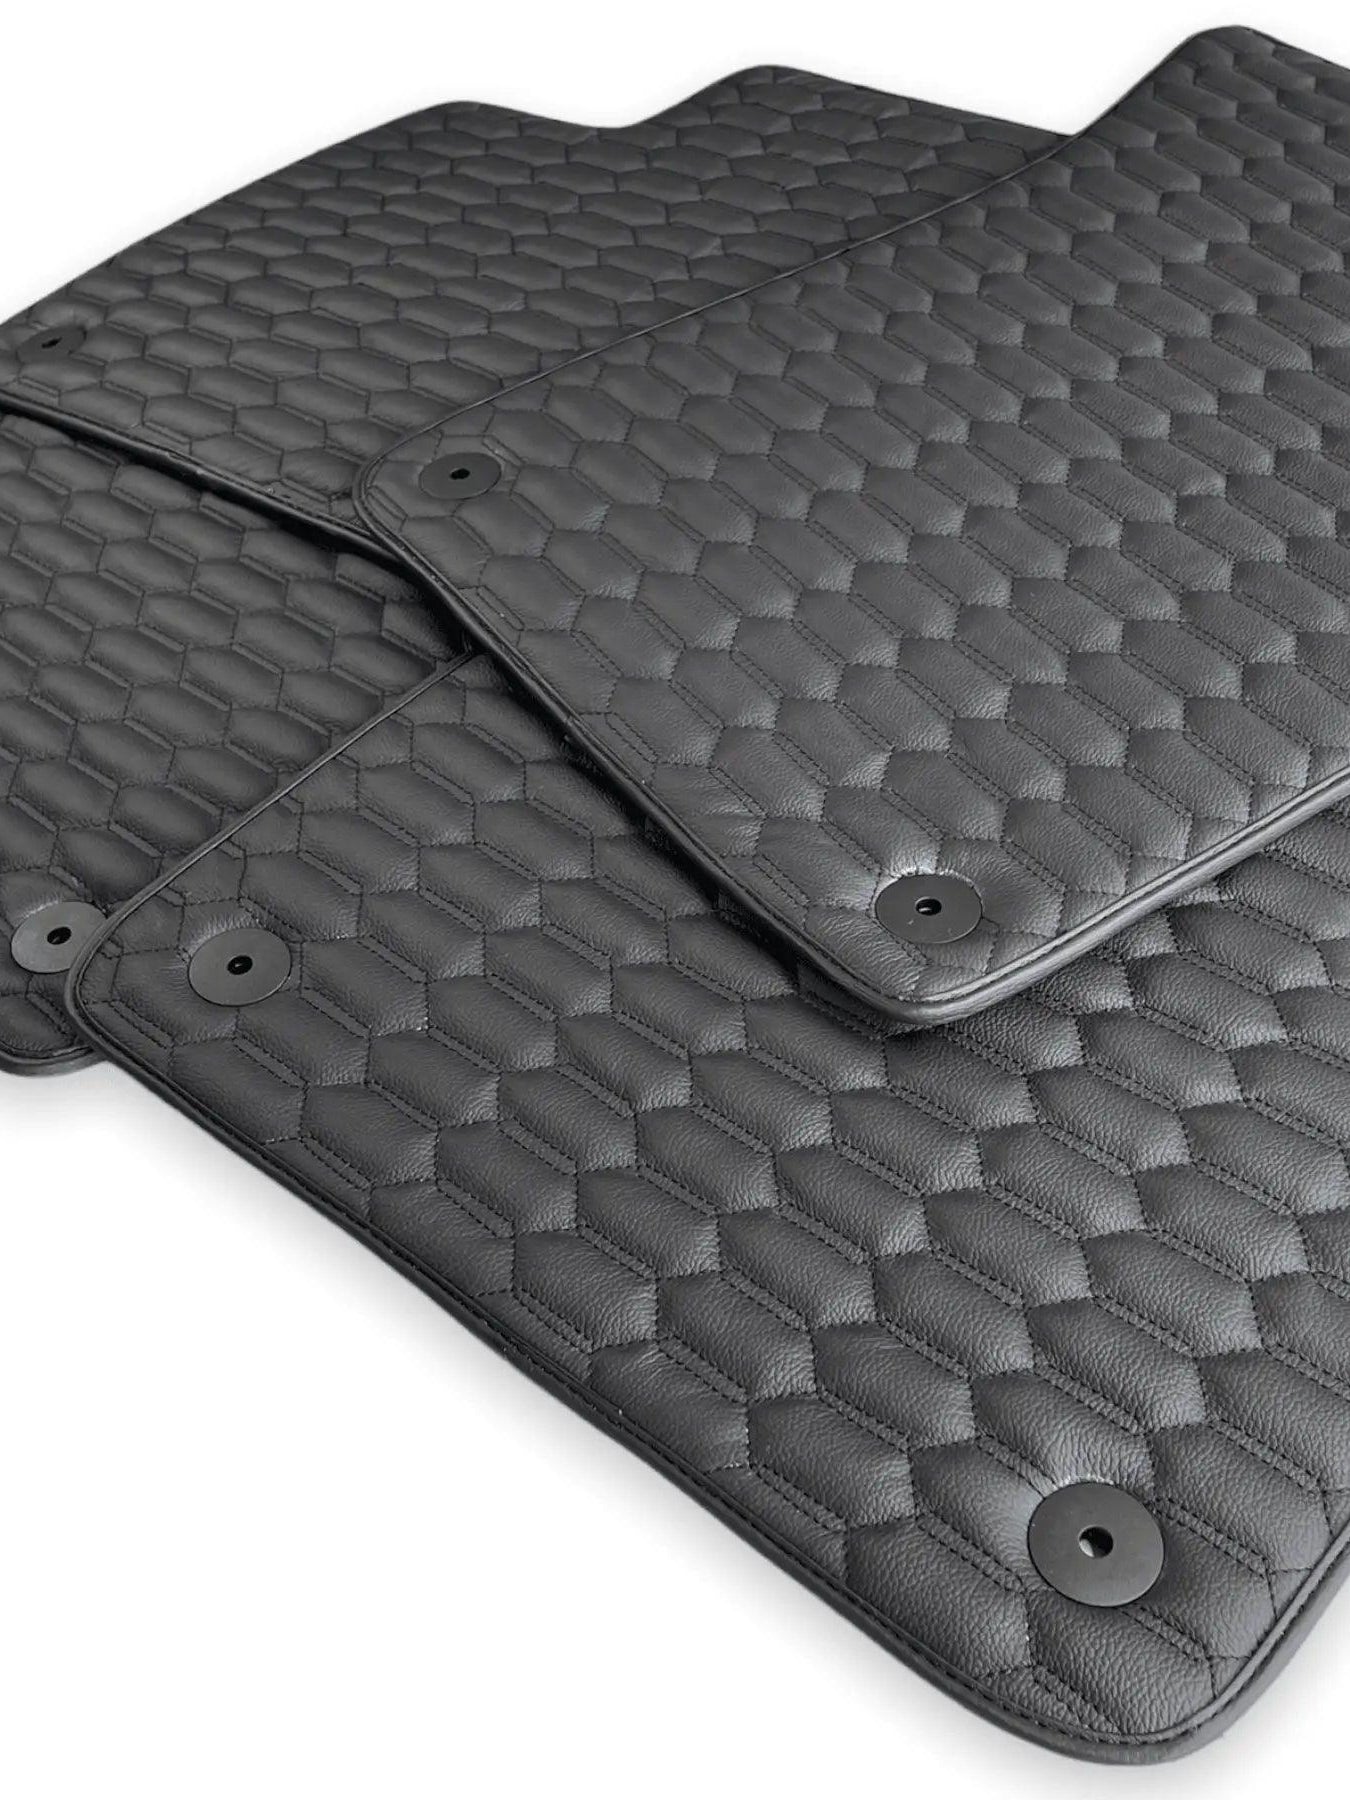 Leather Floor Mats for Bentley Bentayga - AutoWin